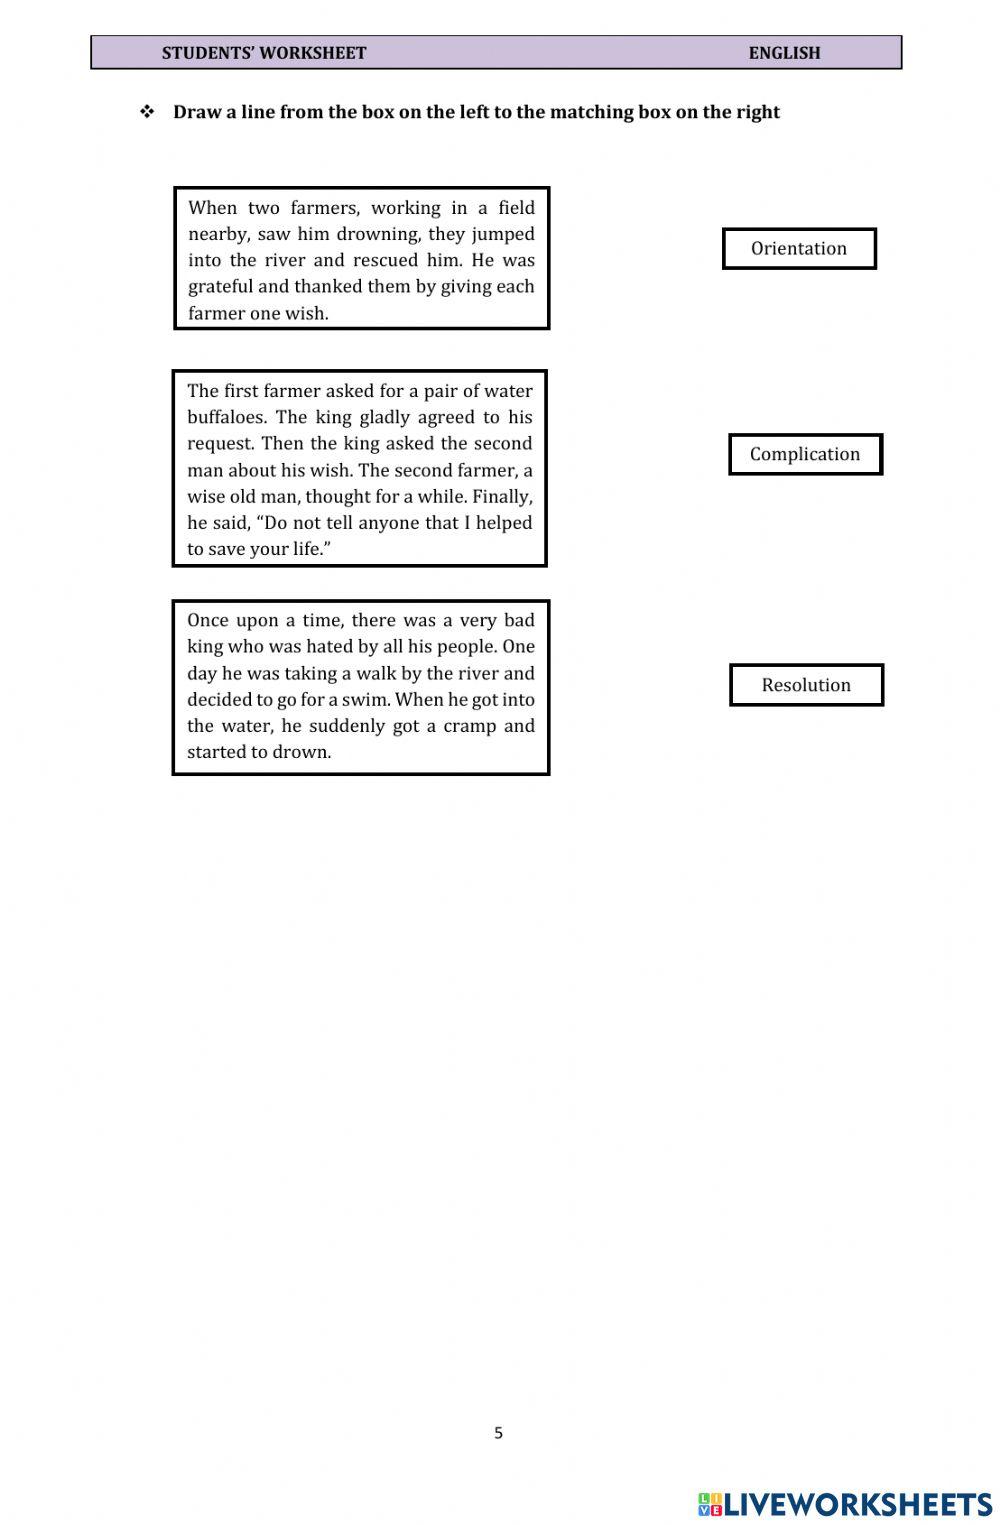 Student's Worksheet (Narrative Text)